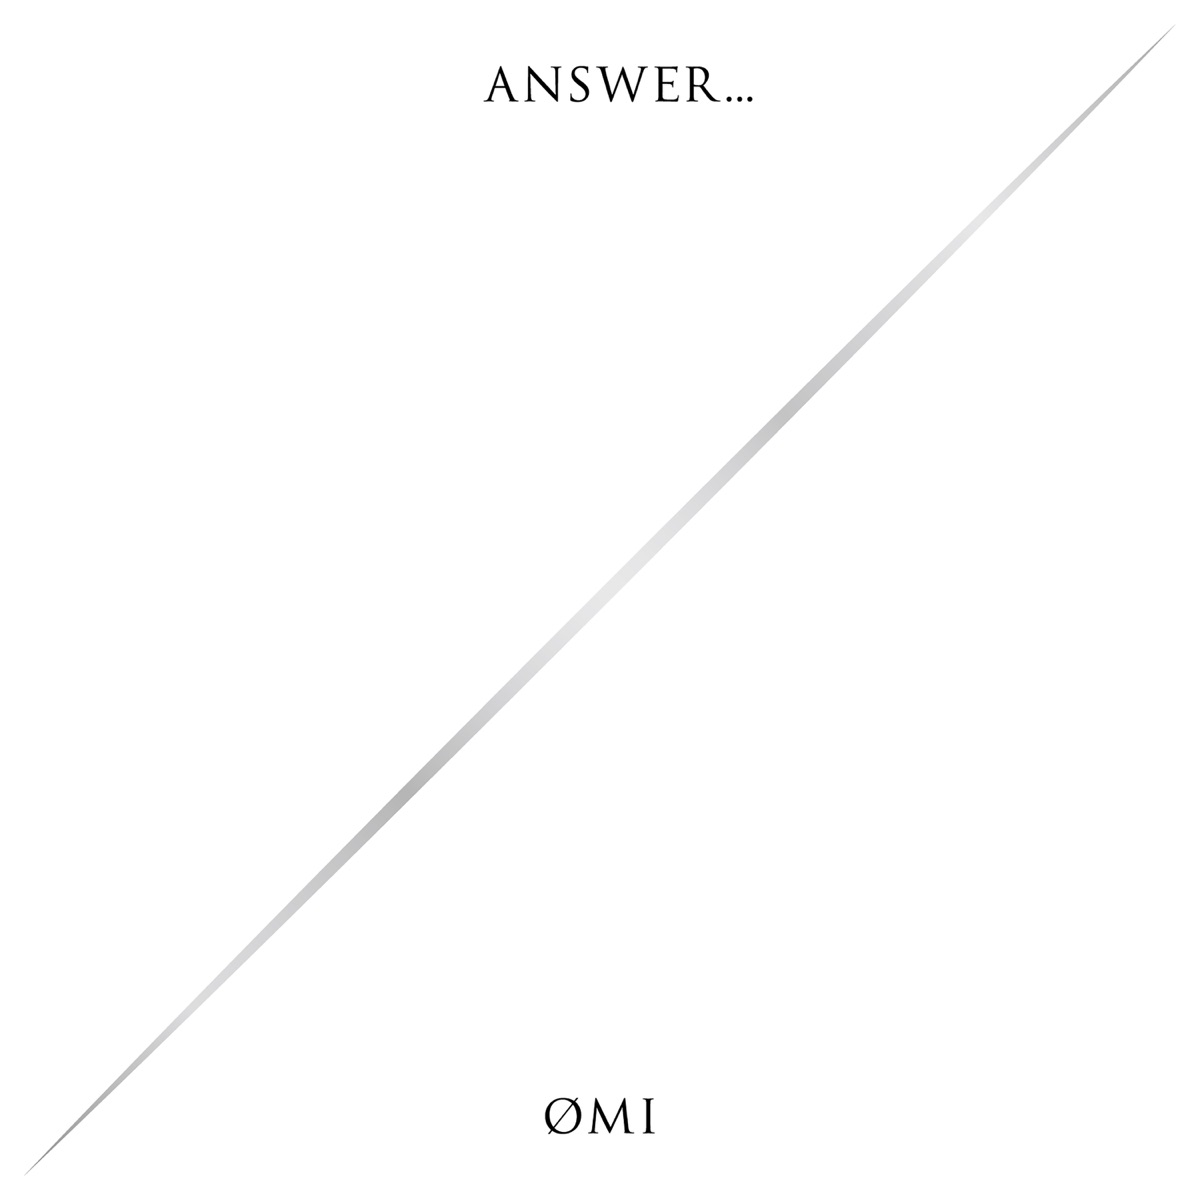 『ØMI - ANSWER... SHADOW』収録の『ANSWER... SHADOW』ジャケット